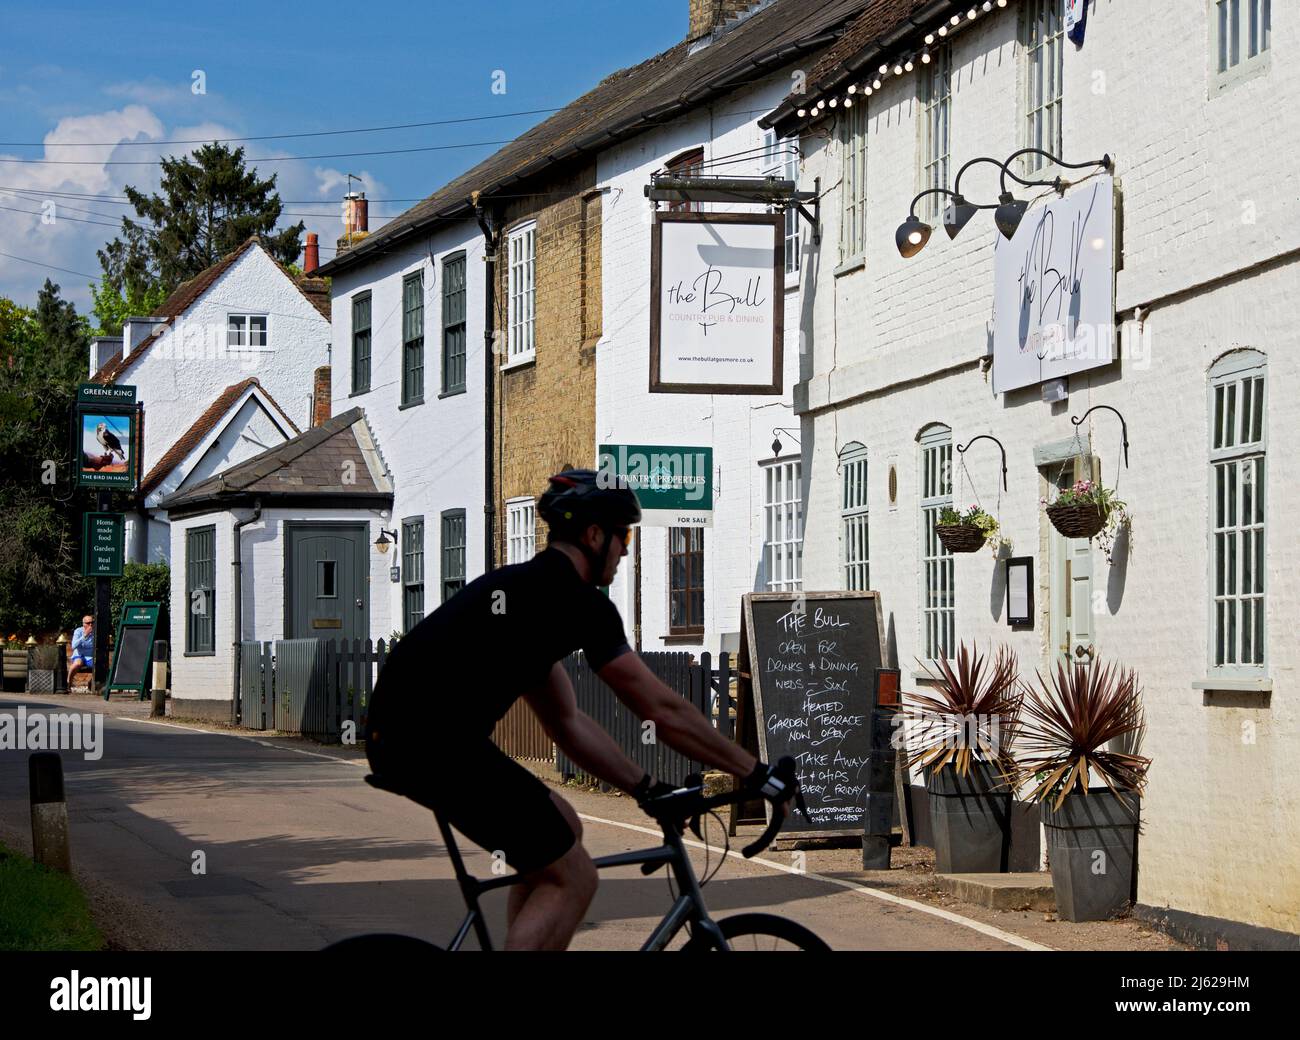 Uomo in bicicletta accanto al Bull pub nel villaggio di Gosmore, Hertfordshire, Inghilterra Regno Unito Foto Stock